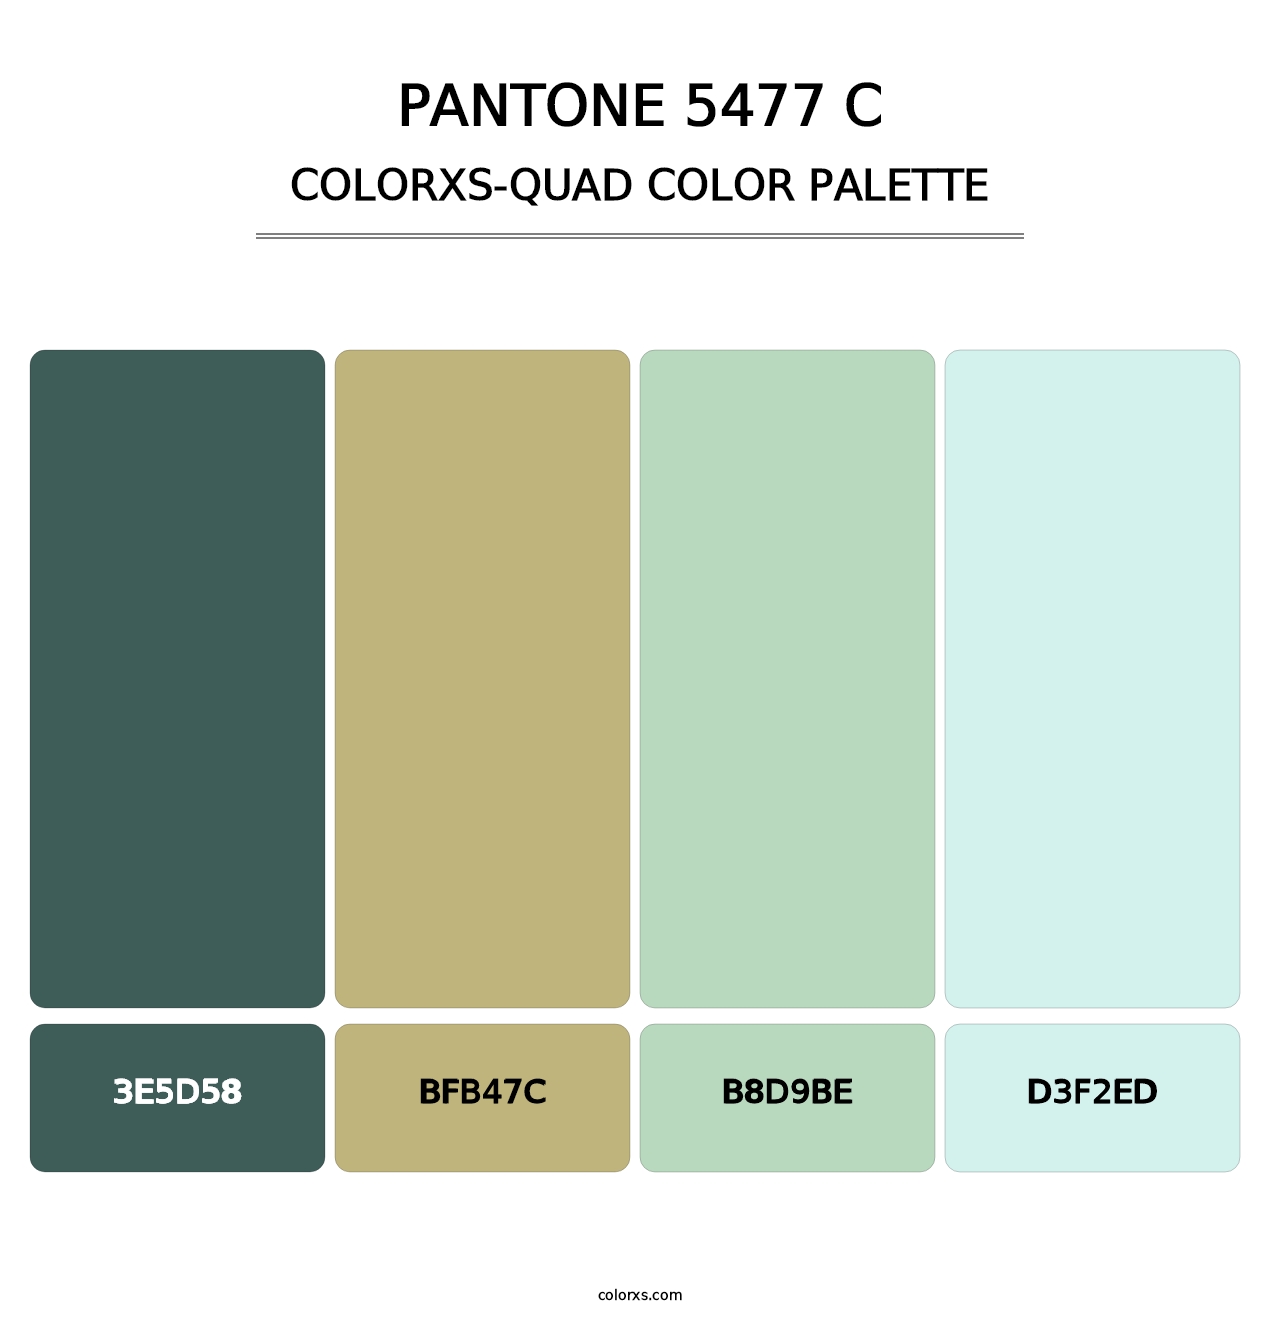 PANTONE 5477 C - Colorxs Quad Palette